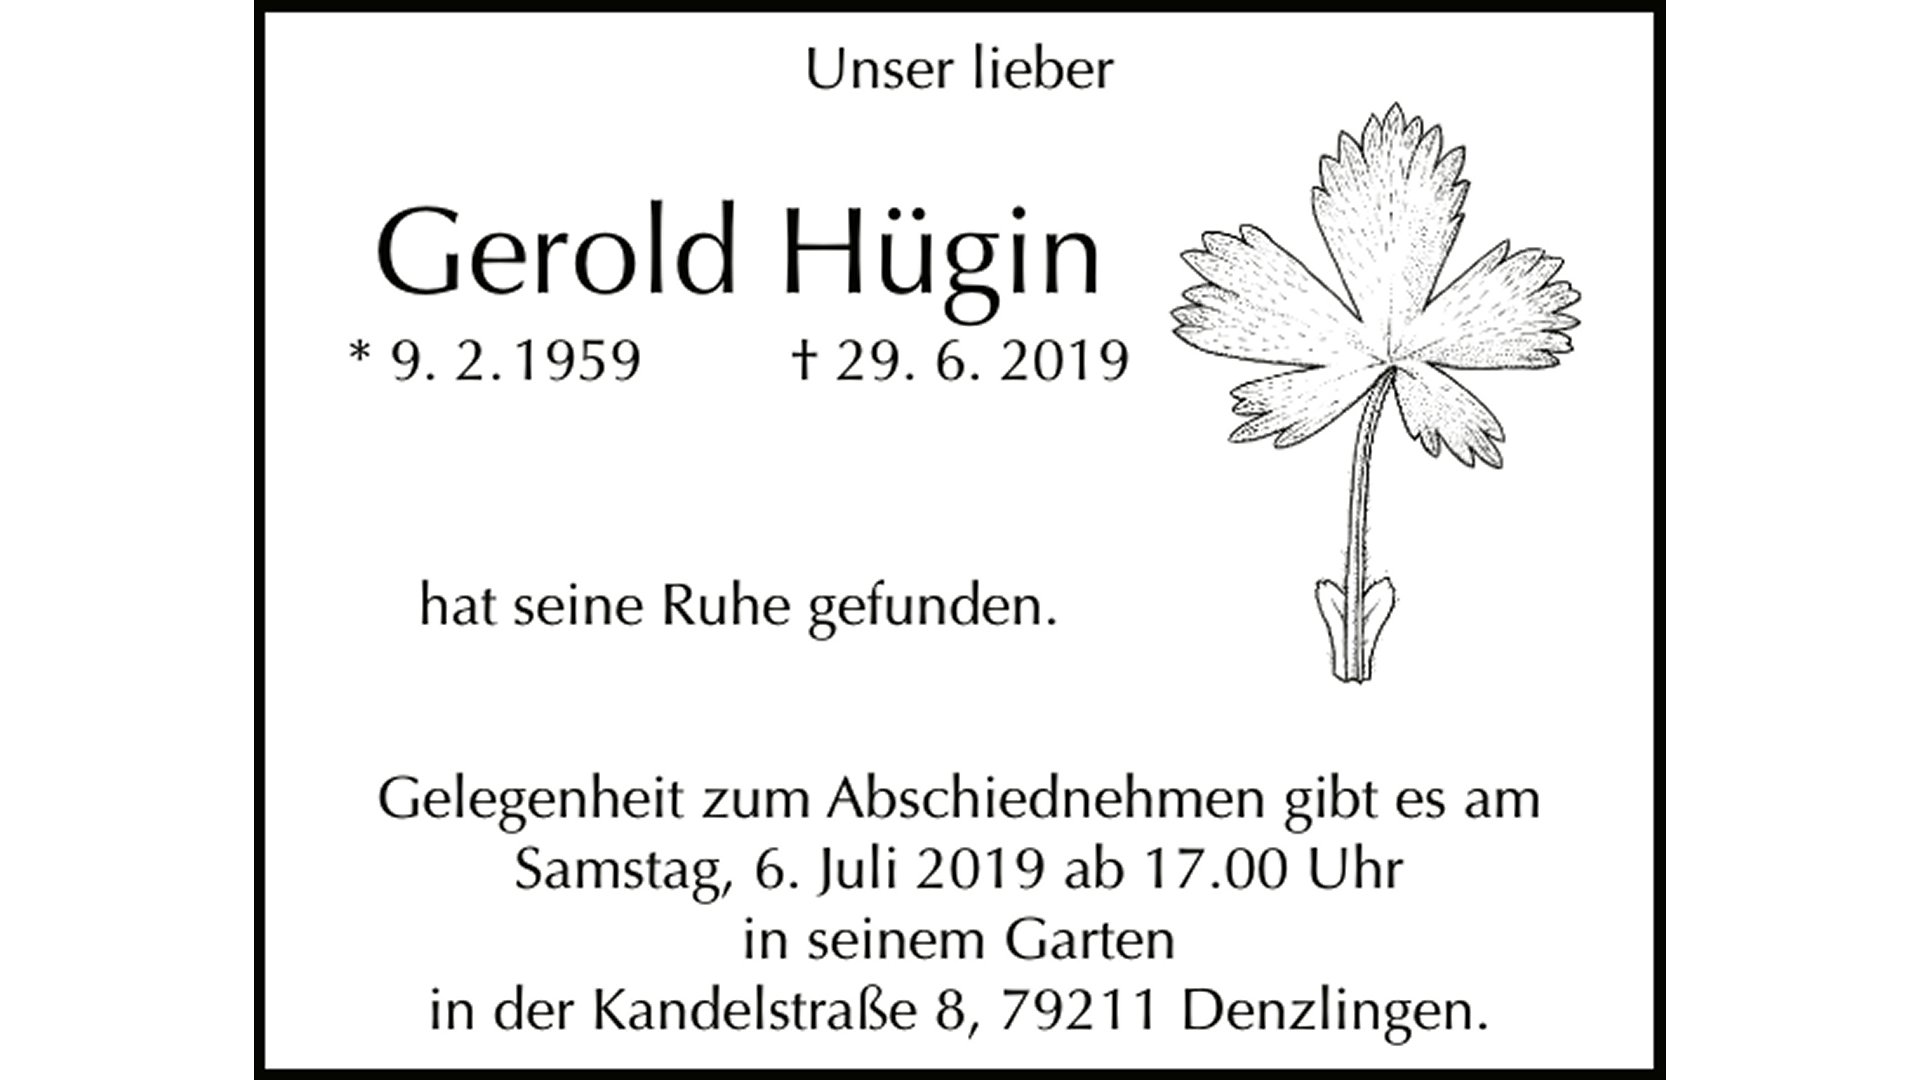 †2019 Gerold Hügin